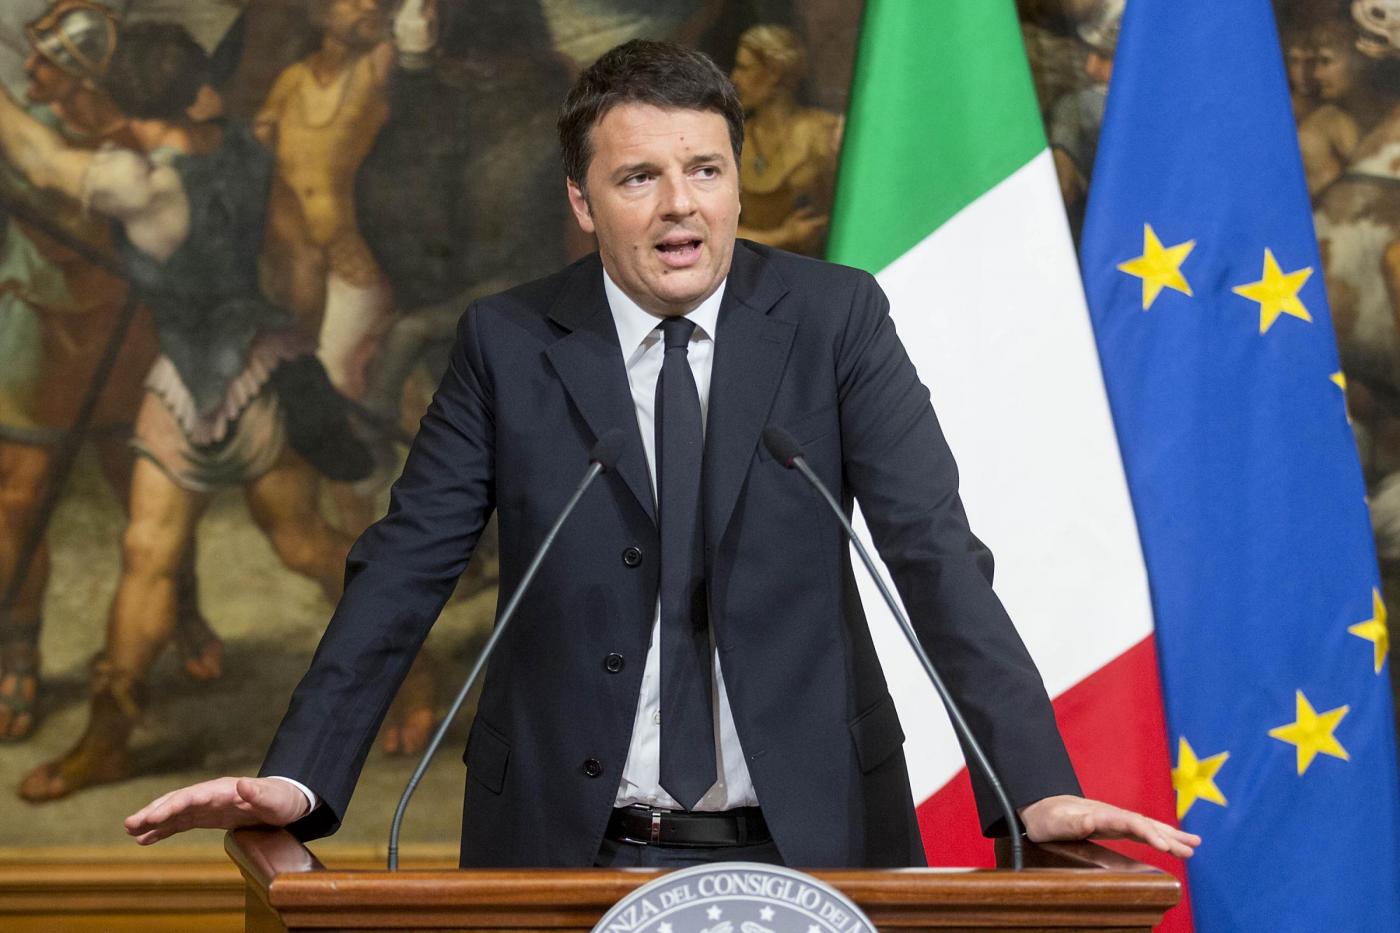 Palazzo Chigi Dichiarazioni di Matteo Renzi su attentati a Bruxelles